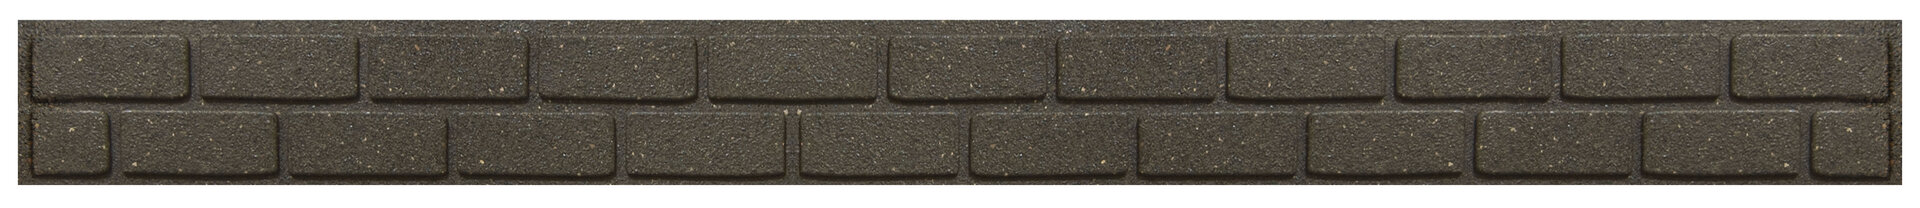 Hnědý gumový zahradní obrubník FLOMA Bricks - délka 120 cm, šířka 2 cm a výška 9 cm